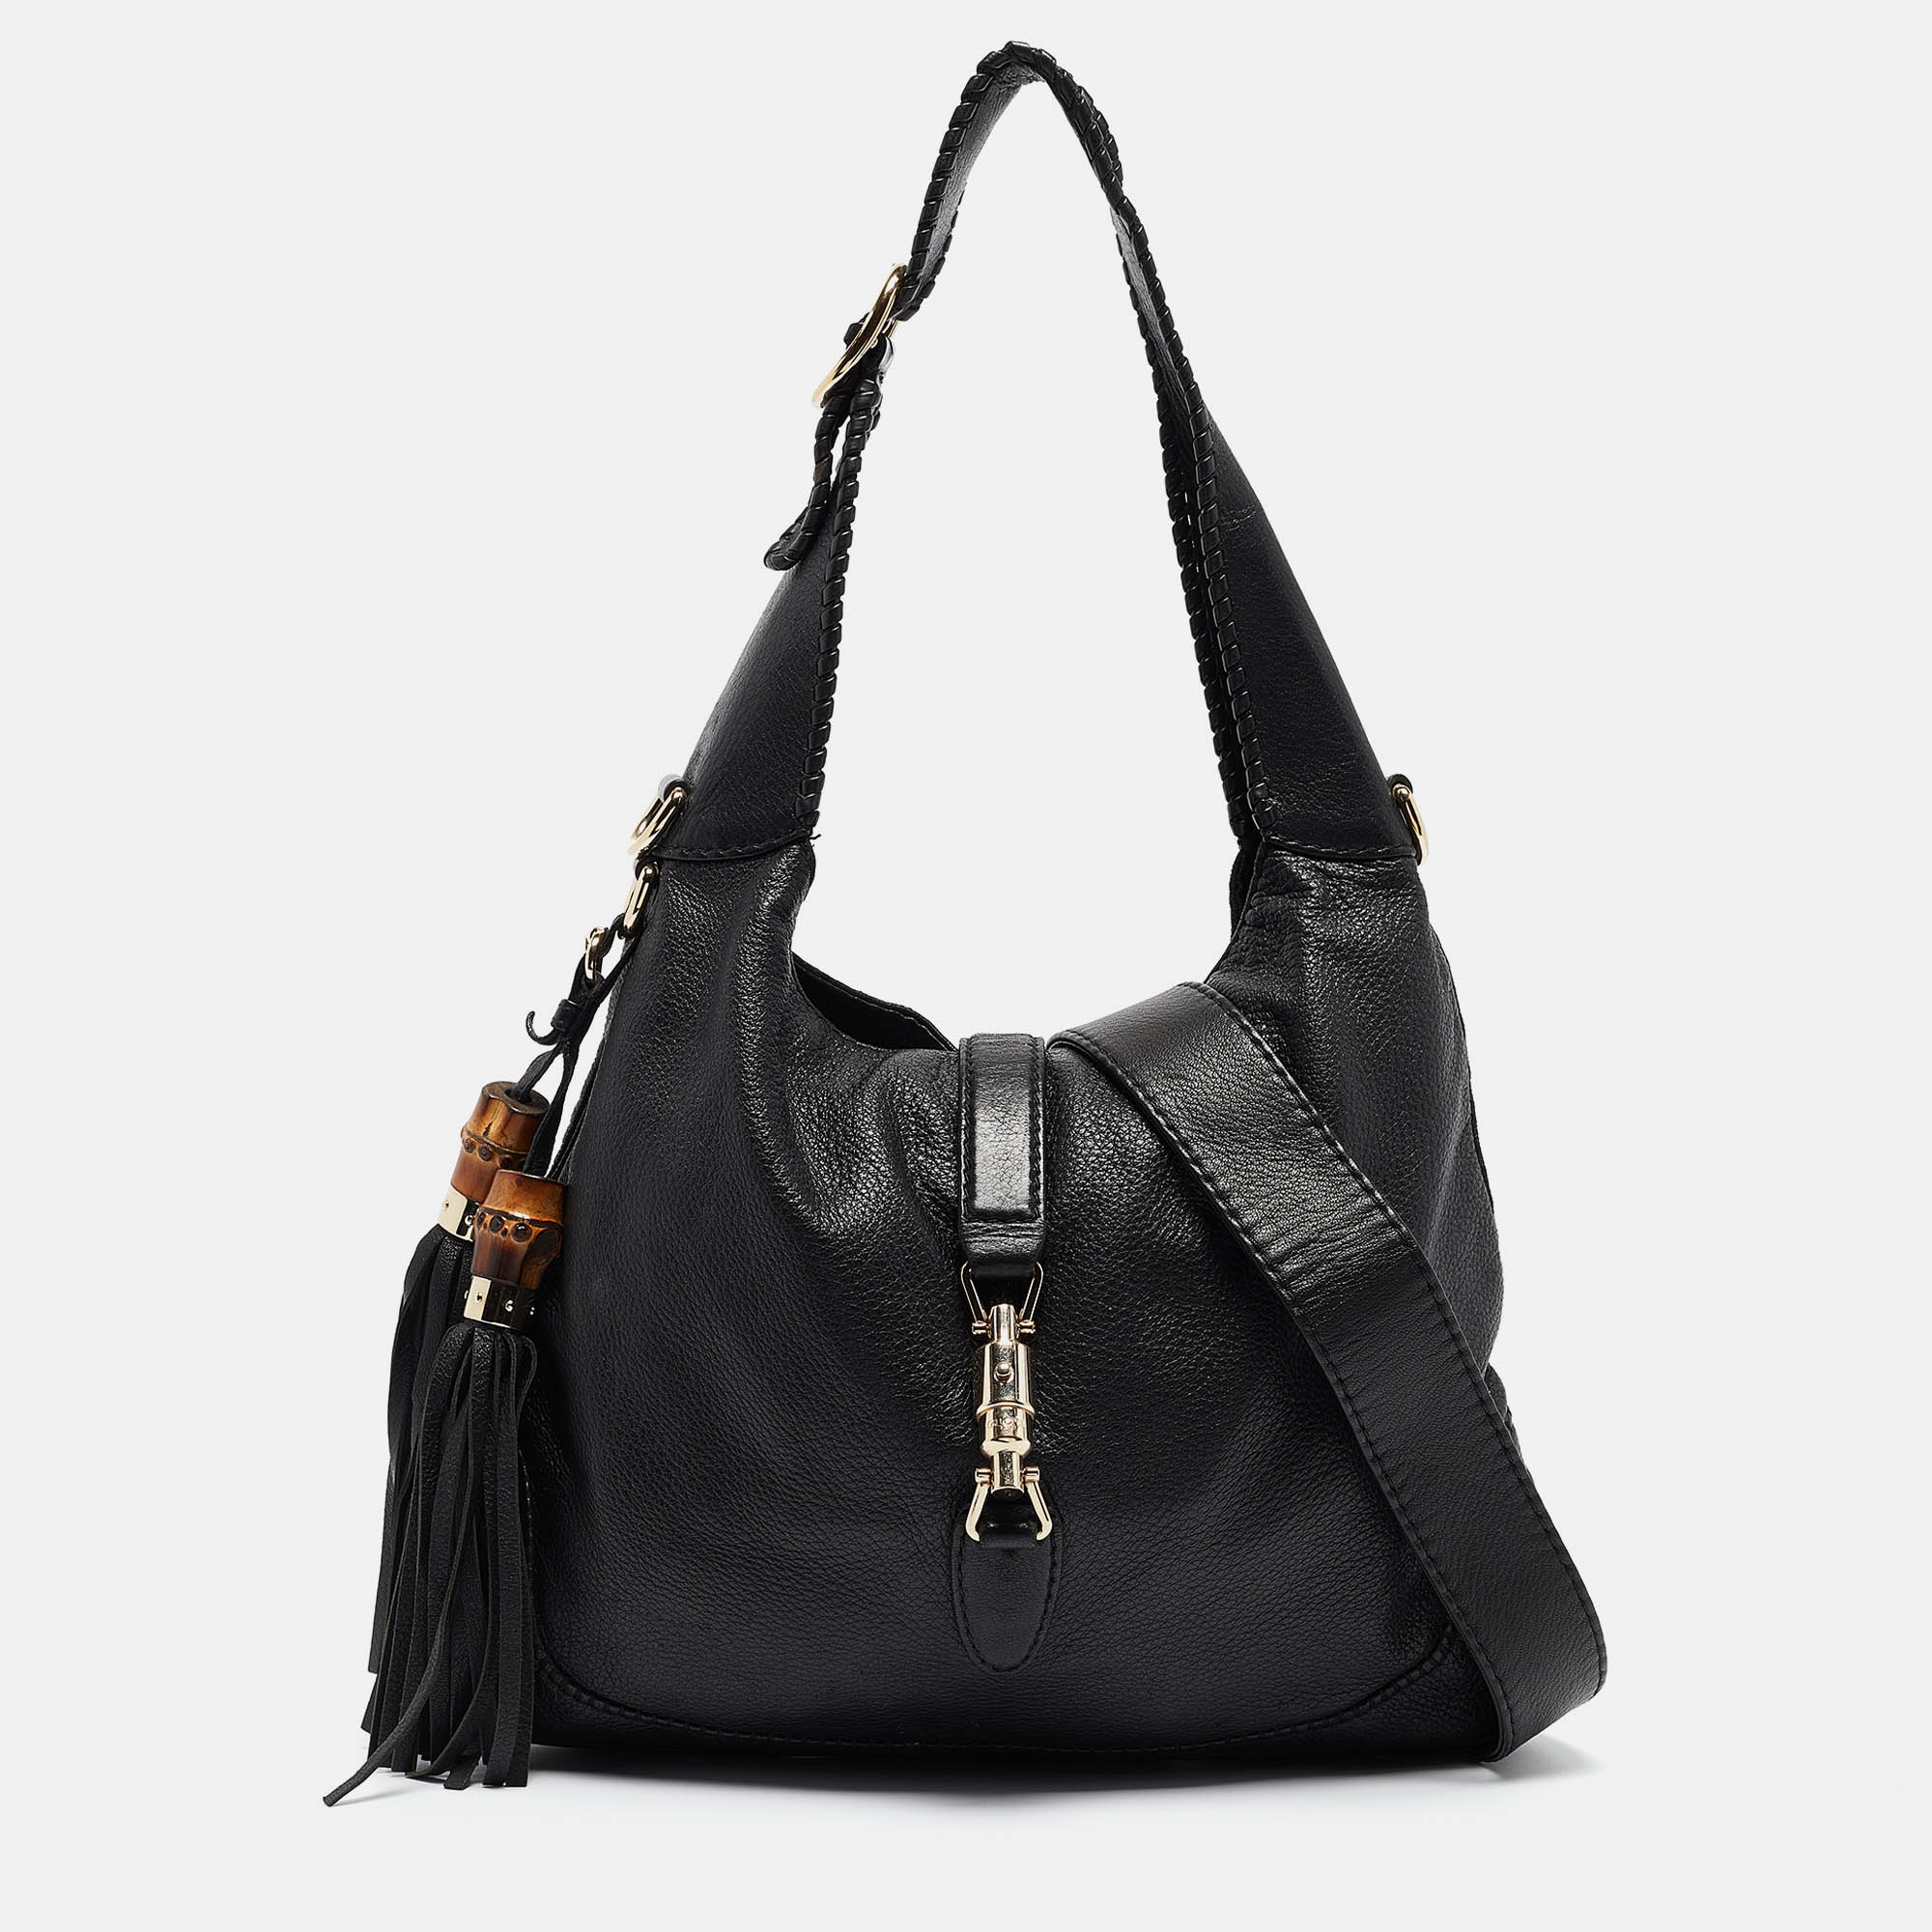 Gucci Black Soft Leather Medium New Jackie Shoulder Bag